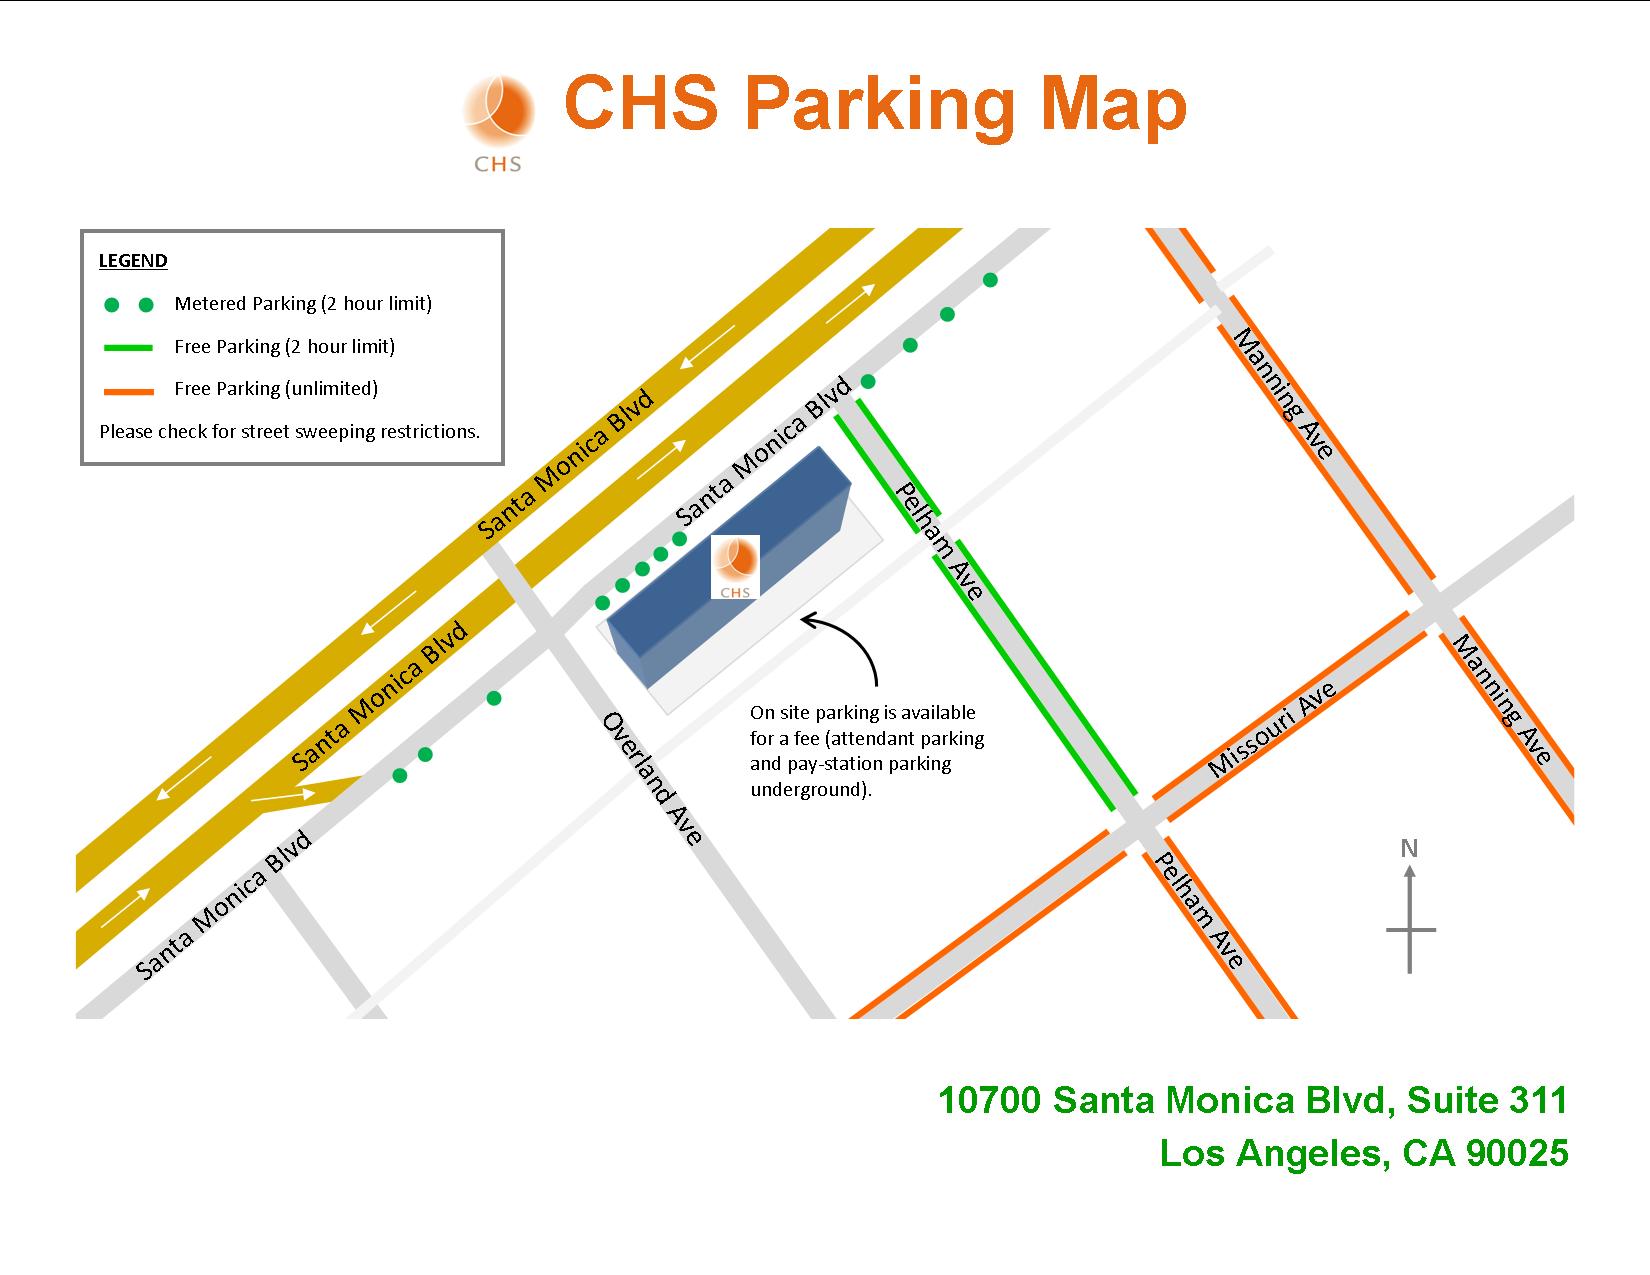 CHS parking map